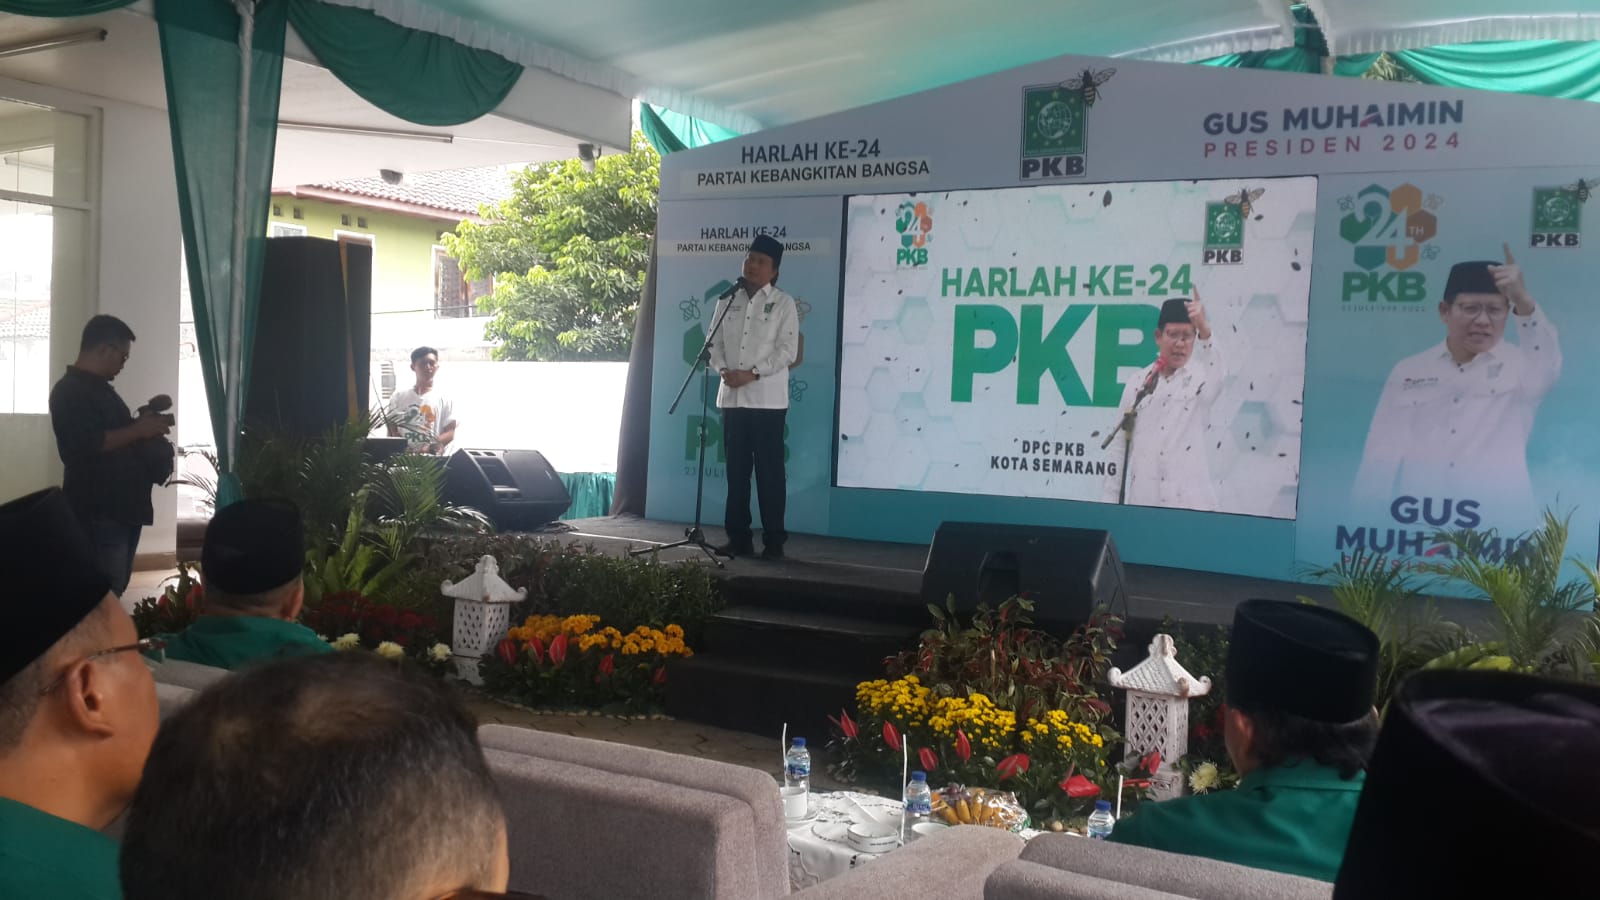 Yusuf Chudlori (Gus Yusuf CH) saat memberikan sambutan dalam gelaran peringatan harlah ke 24 PKB di Kota Semarang. RIFQI/LINGKAR.CO